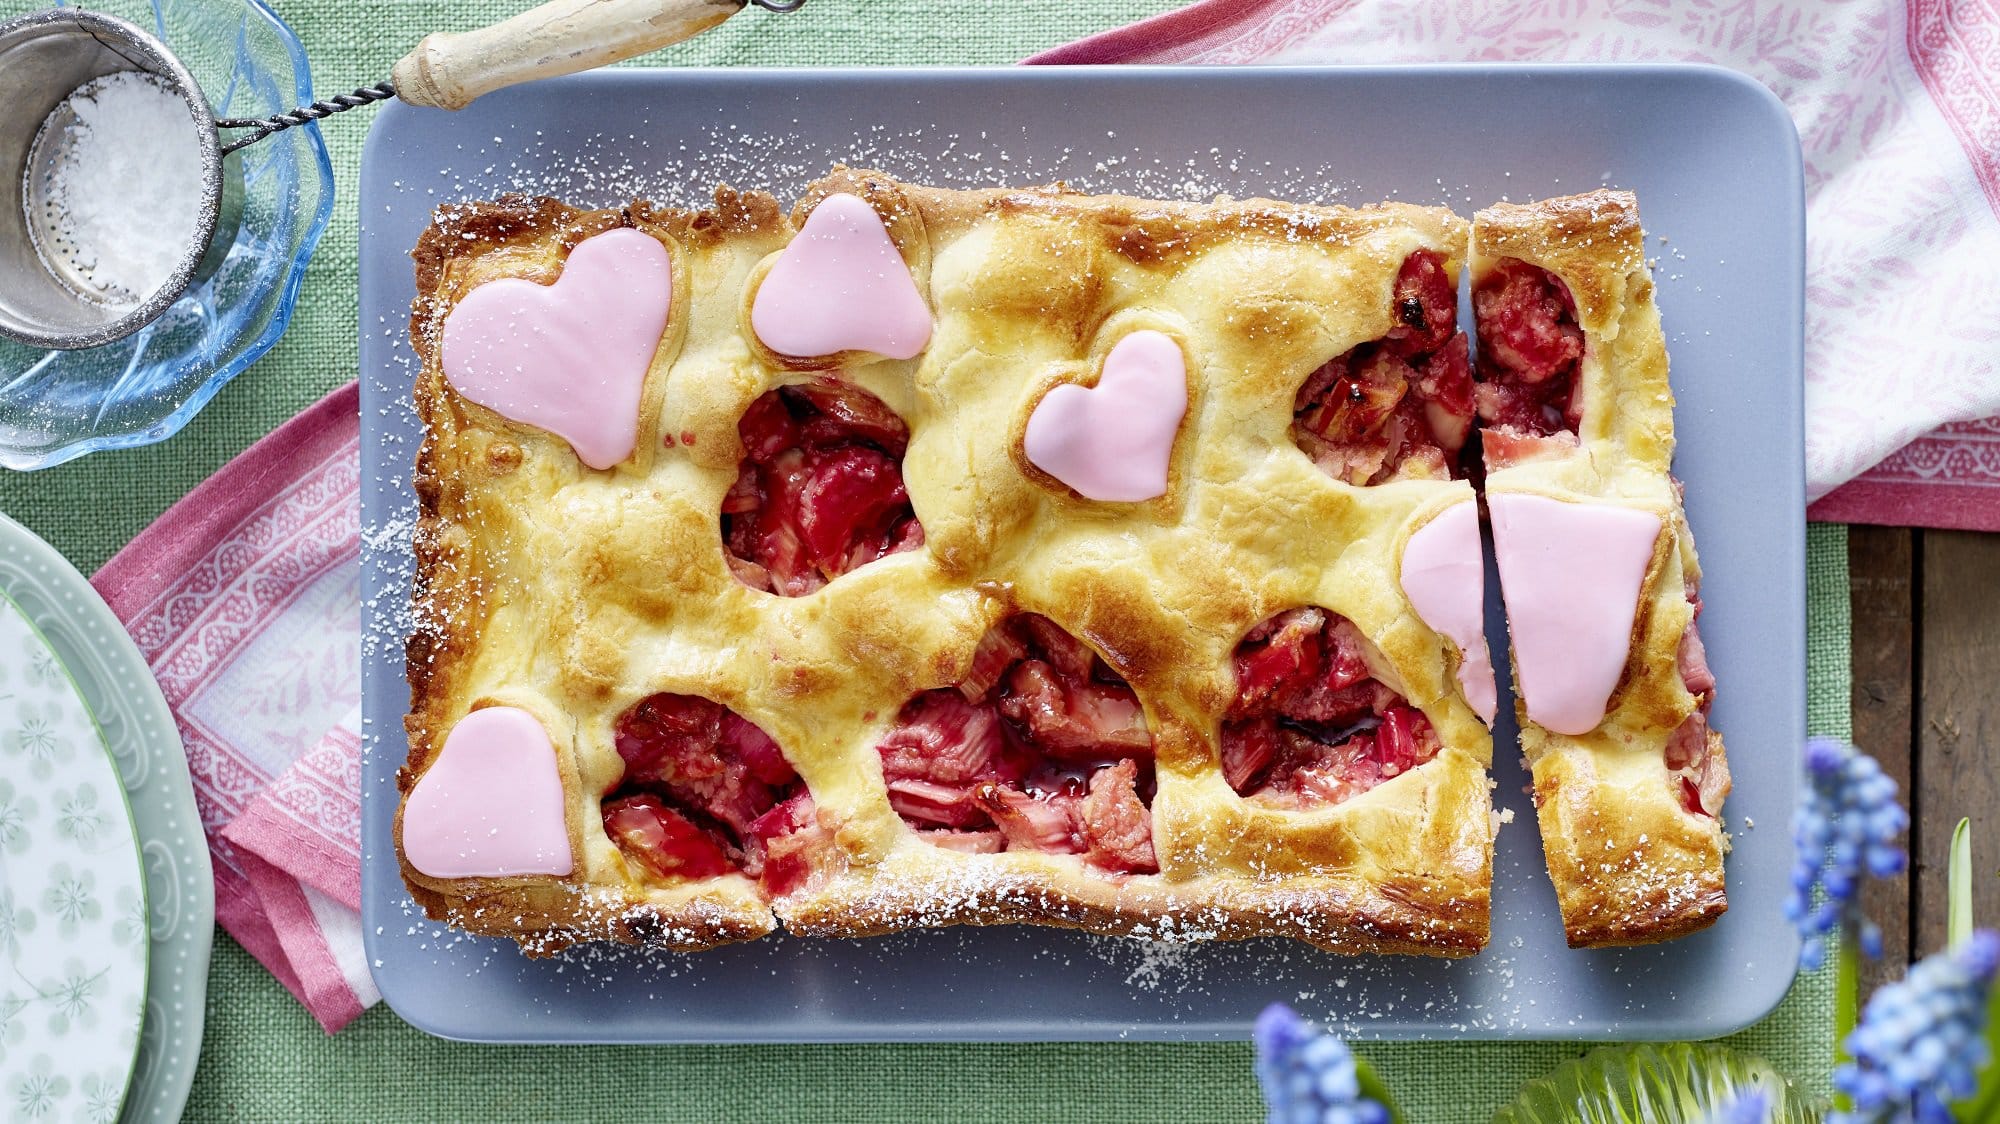 Ein Rhabarber Pie mit Herzen steht mit Puderzucker bestreut auf einer hellen Form. Aus der Teigdecke sind einige Herzen ausgeschnitten. Weitere rosa Herzen sind auf dem Pie verteilt.